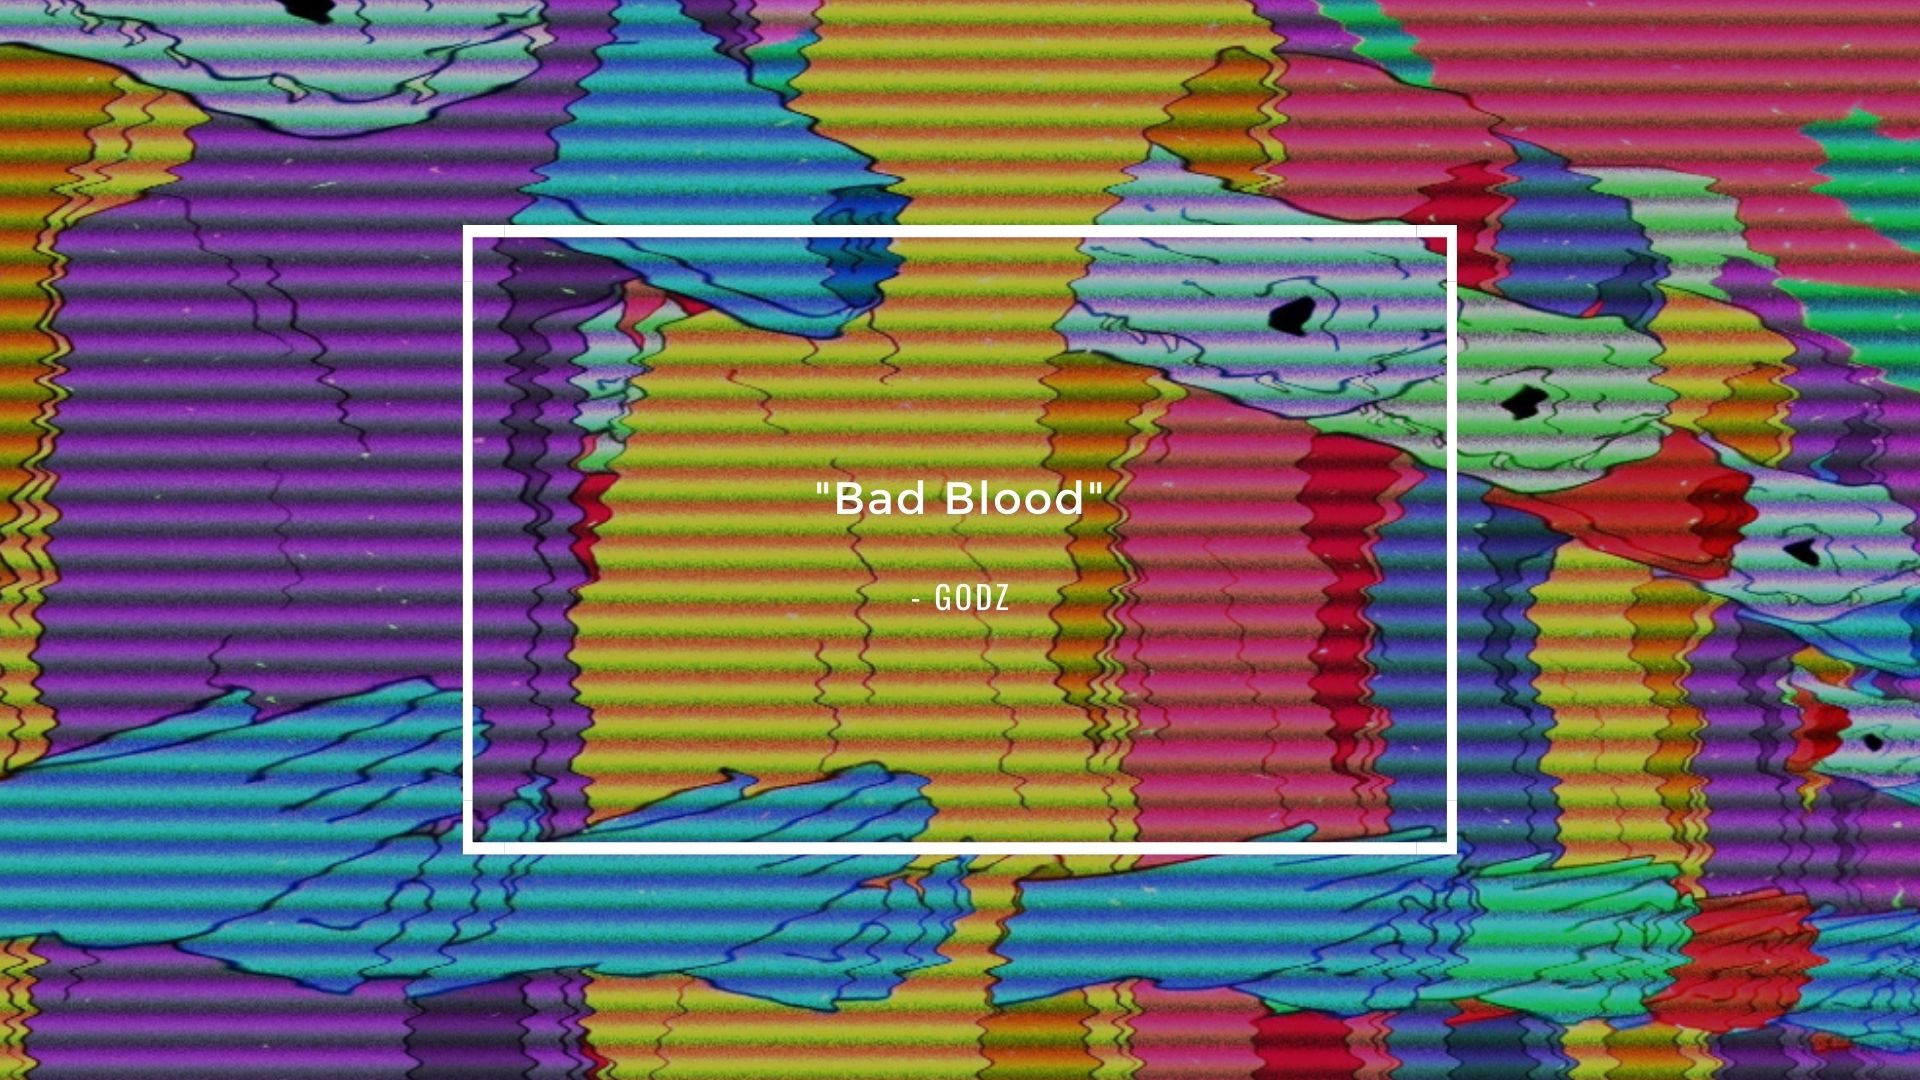 music video - bad blood - godz - USA - indie - indie music - indie pop - indie rock - new music - music blog - wolf in a suit - wolfinasuit - wolf in a suit blog - wolf in a suit music blog